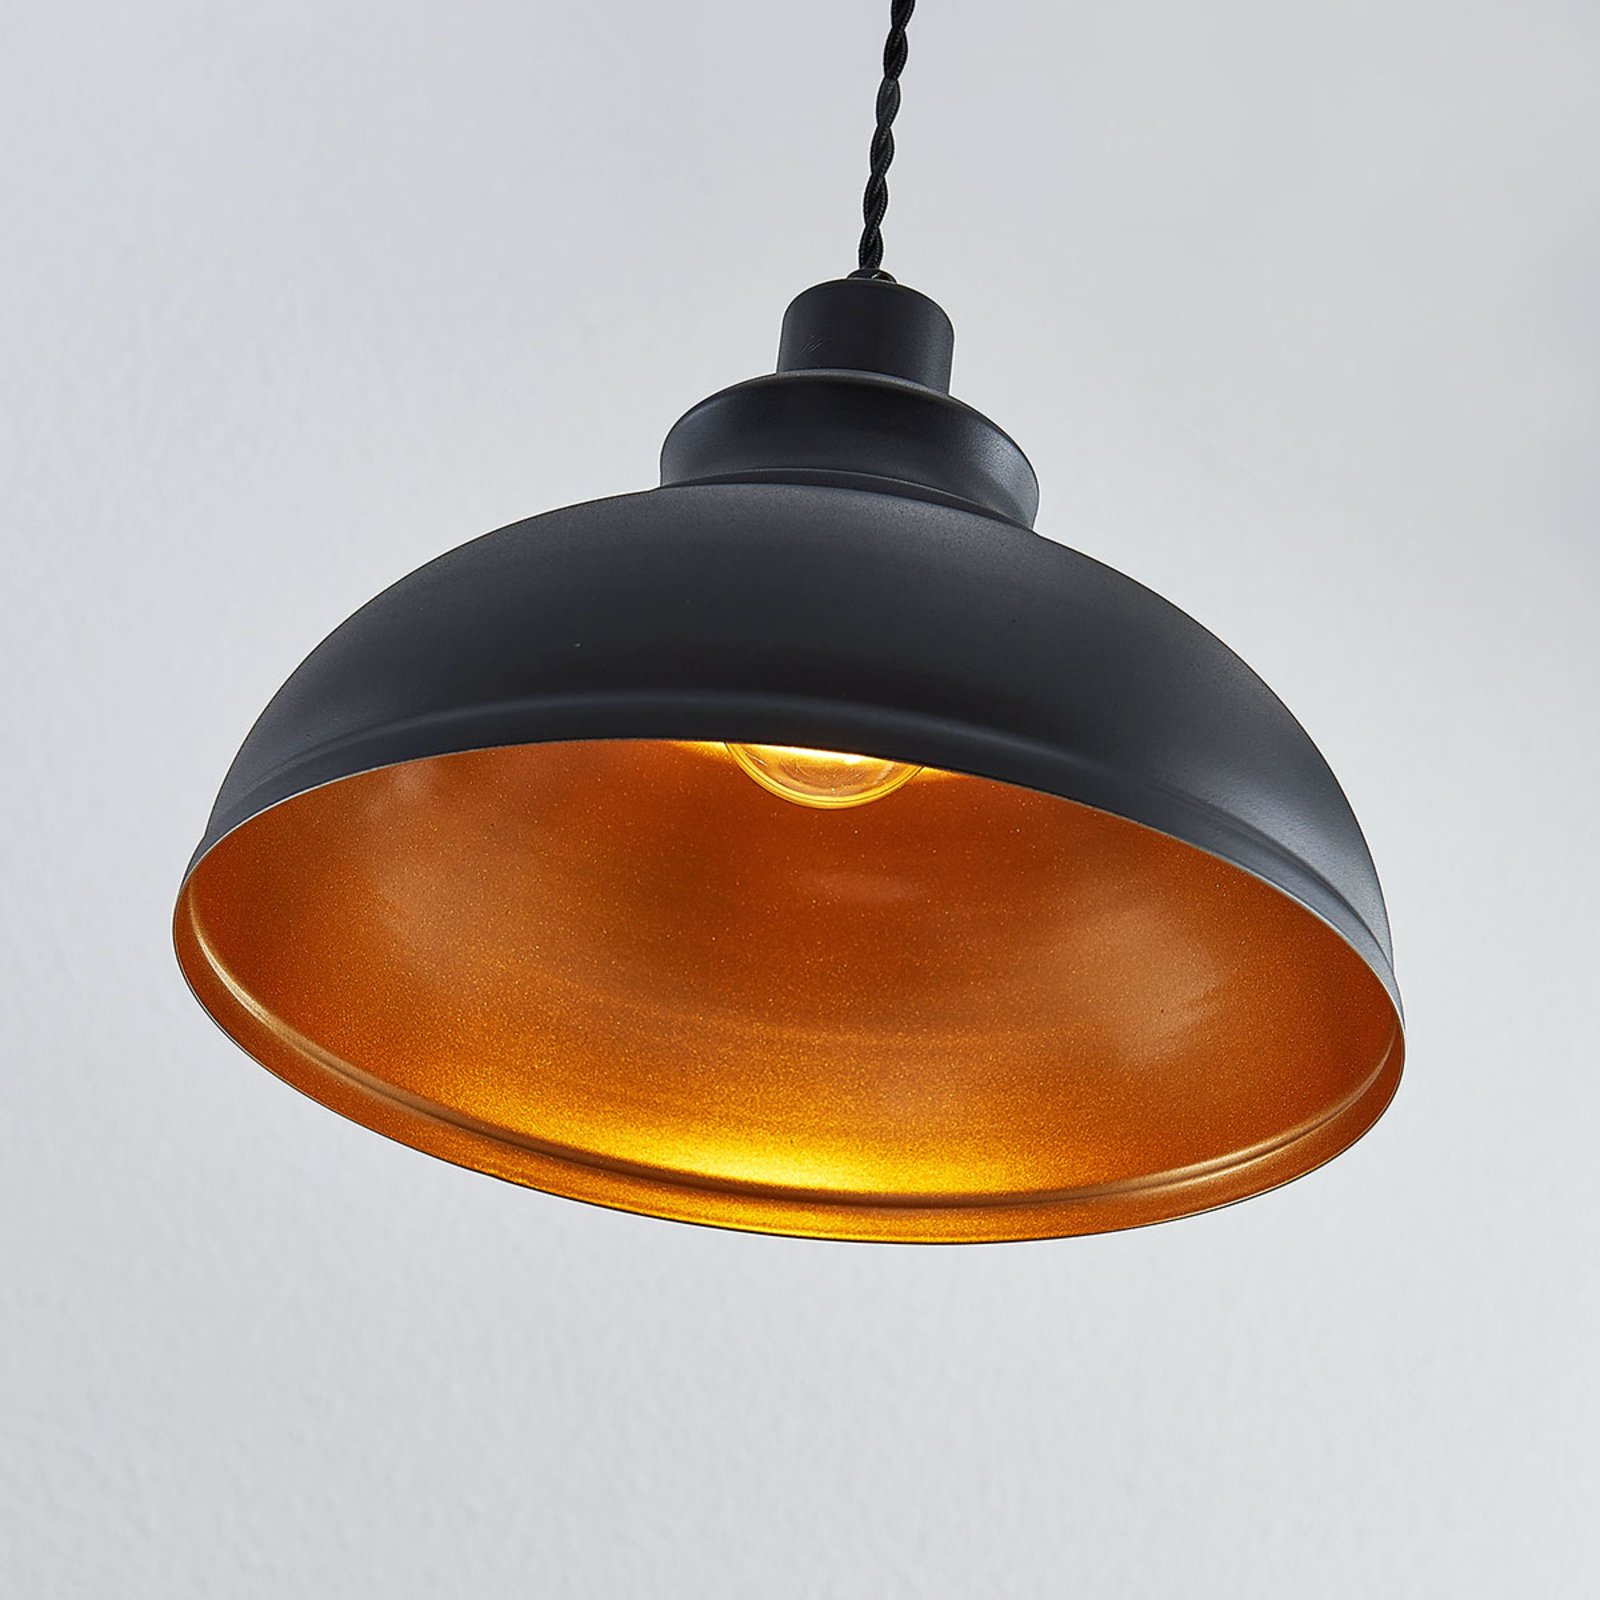 Albertine vintage függő lámpa, fém, fekete